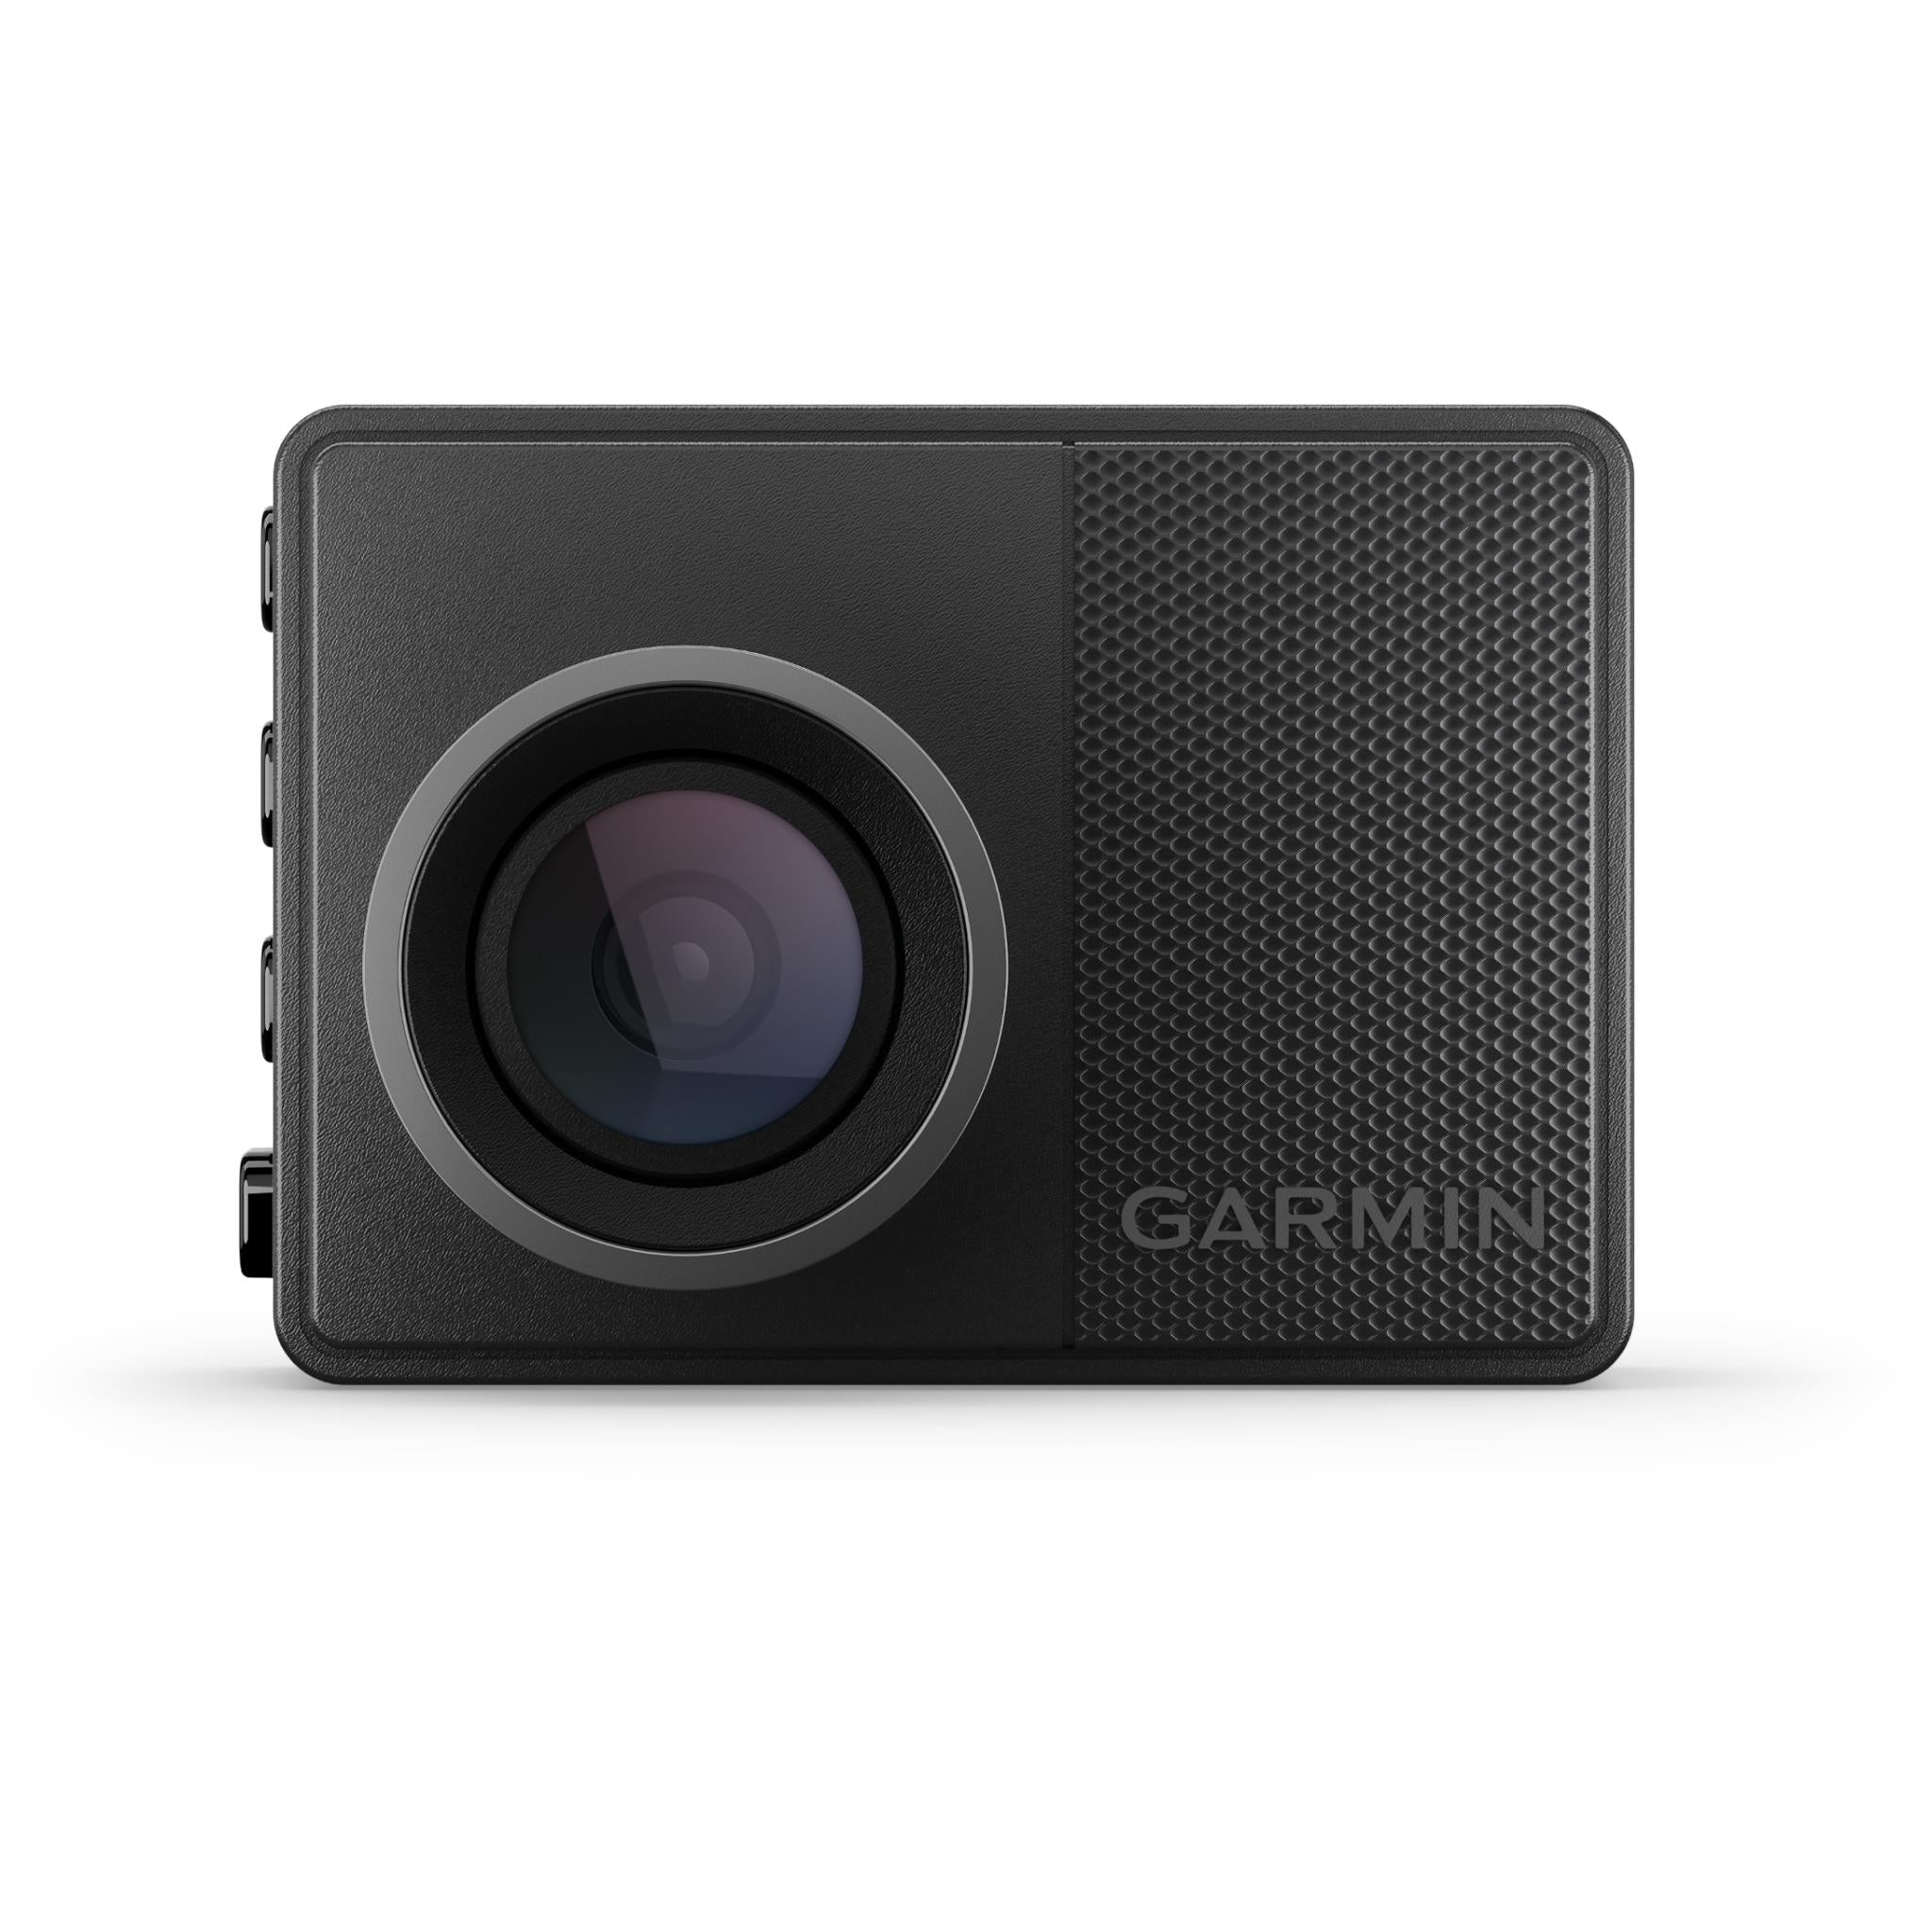 Garmin Dash Cam 57 review